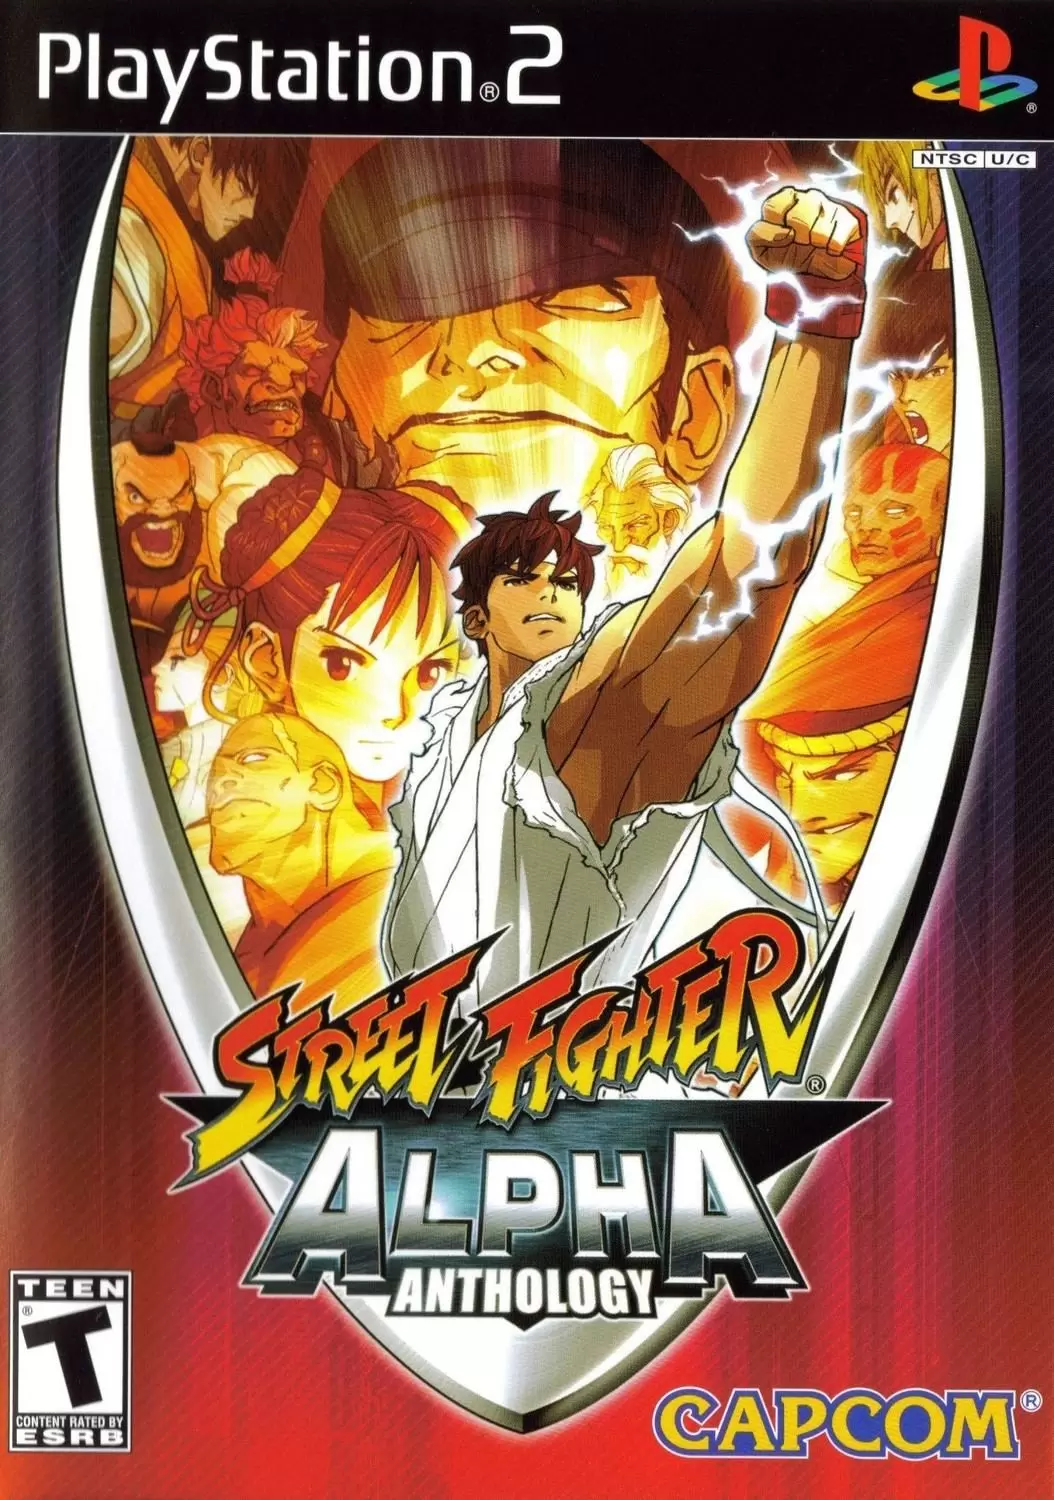 PS2 Games - Street Fighter Alpha Anthology